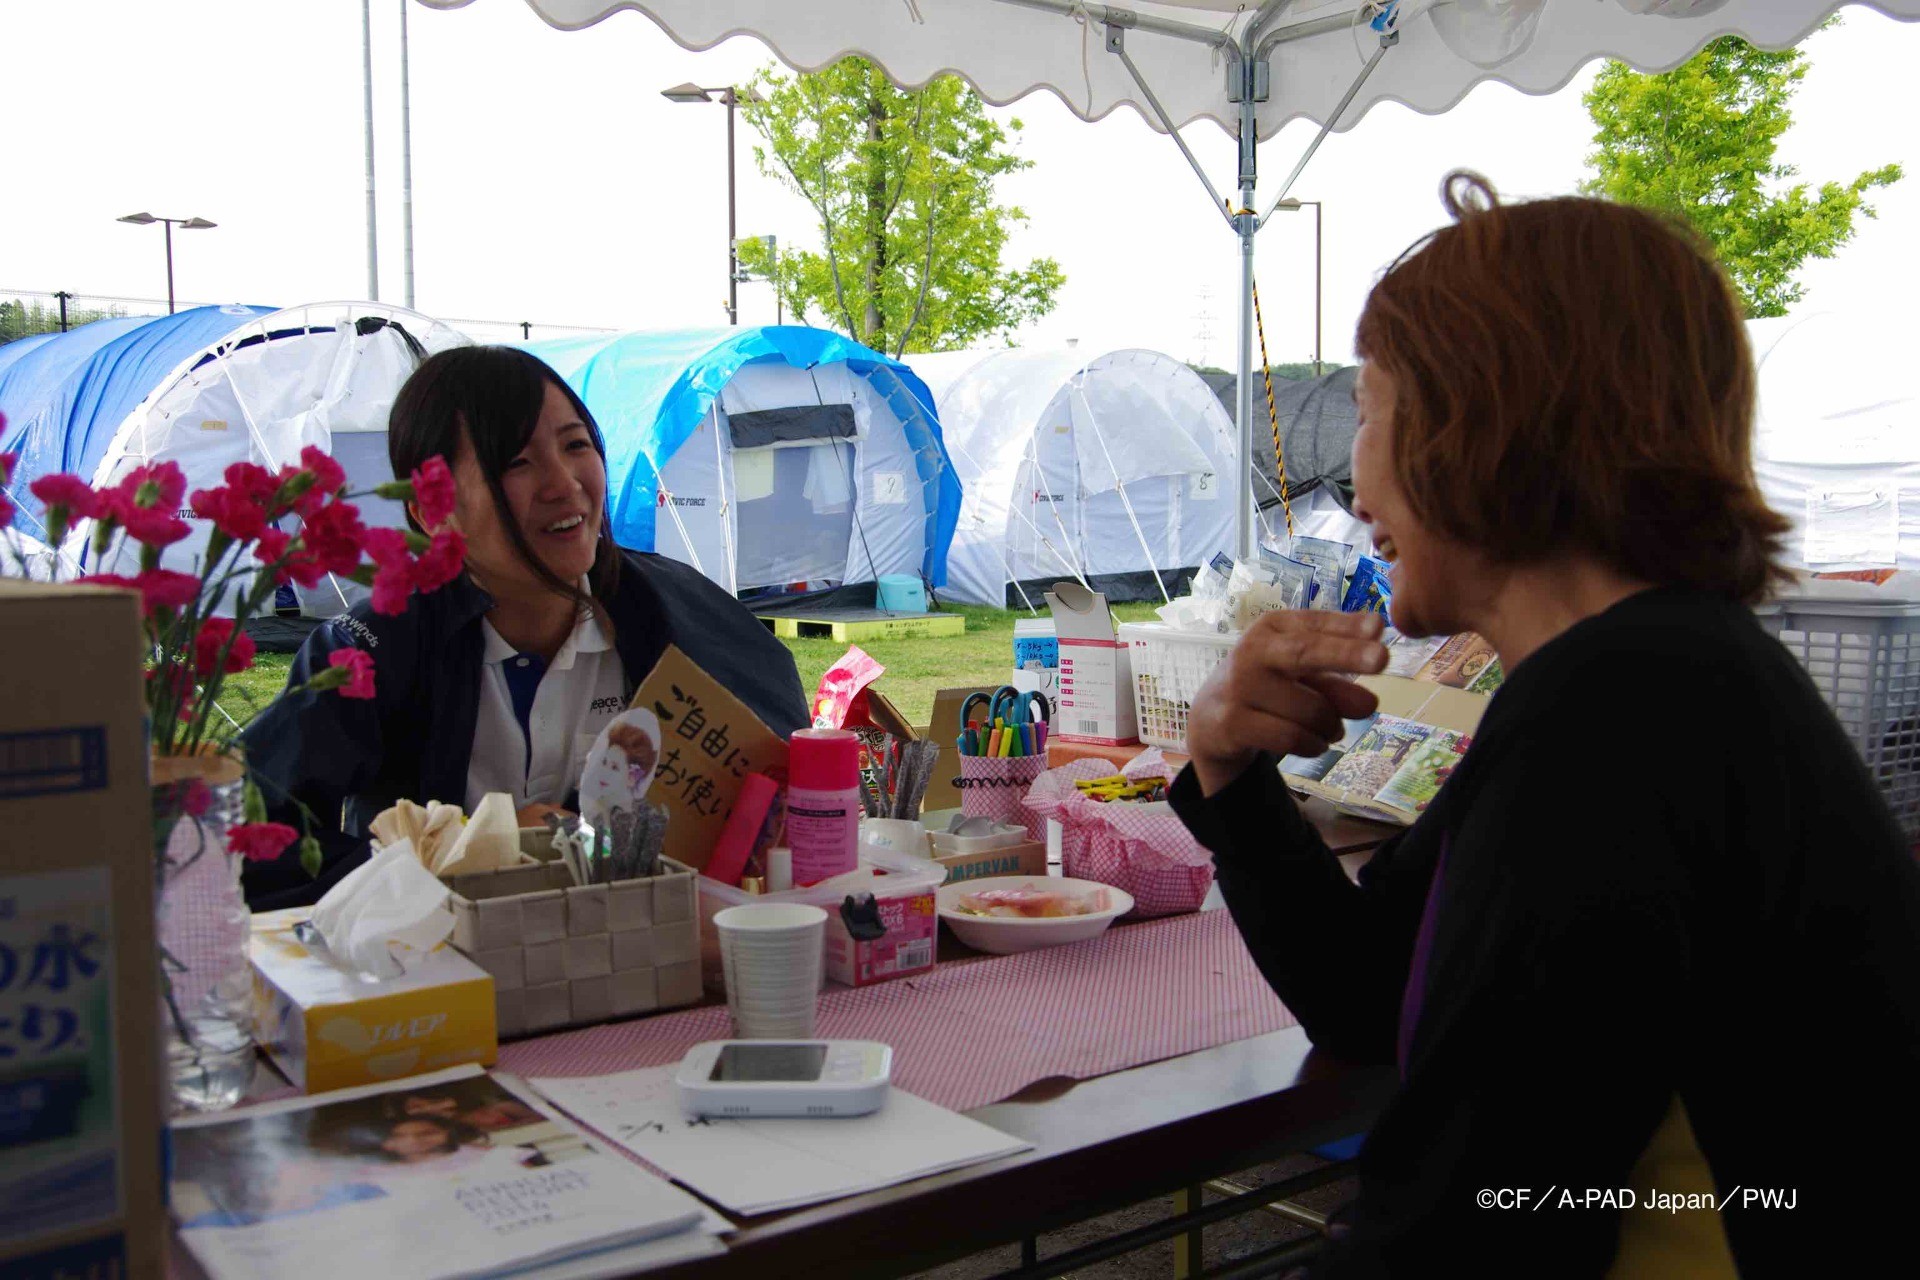 熊本地震の避難所の一角にお茶を飲みながら座って話せるスペースを設置